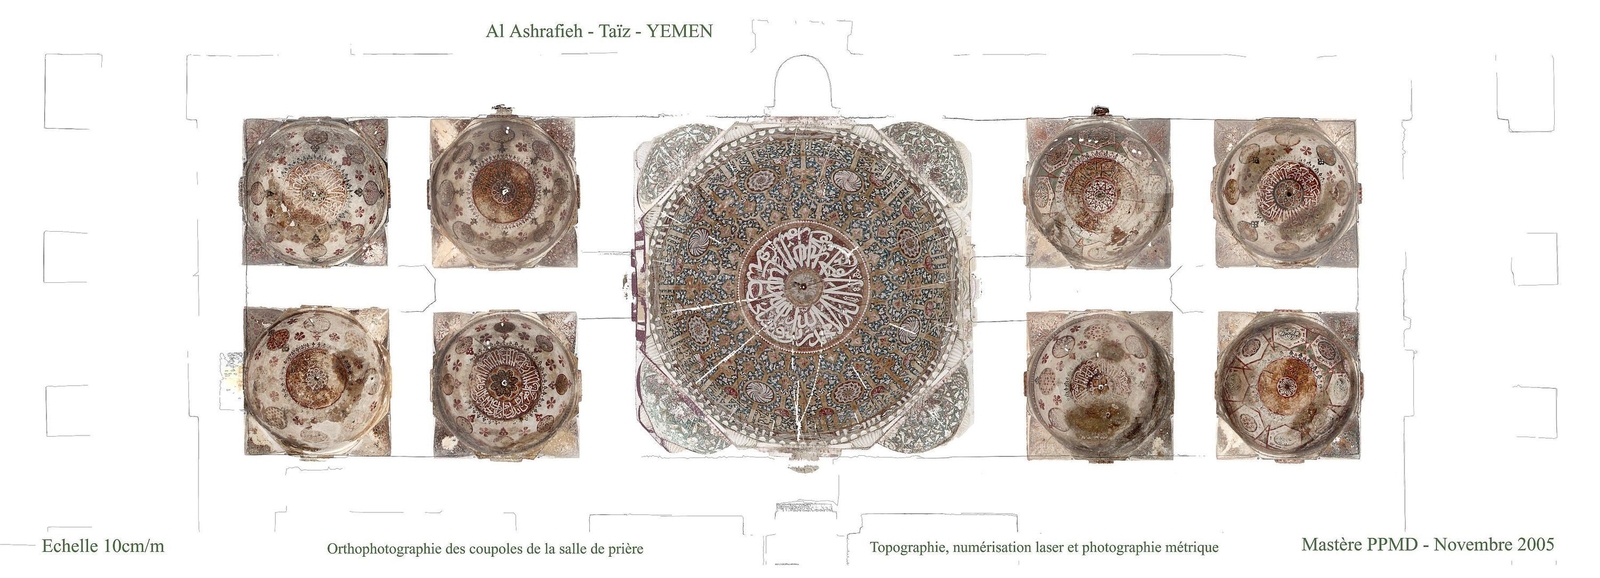 Orthophotographie des coupoles de la mosquée al-Ashrafiyya, Taʿizz